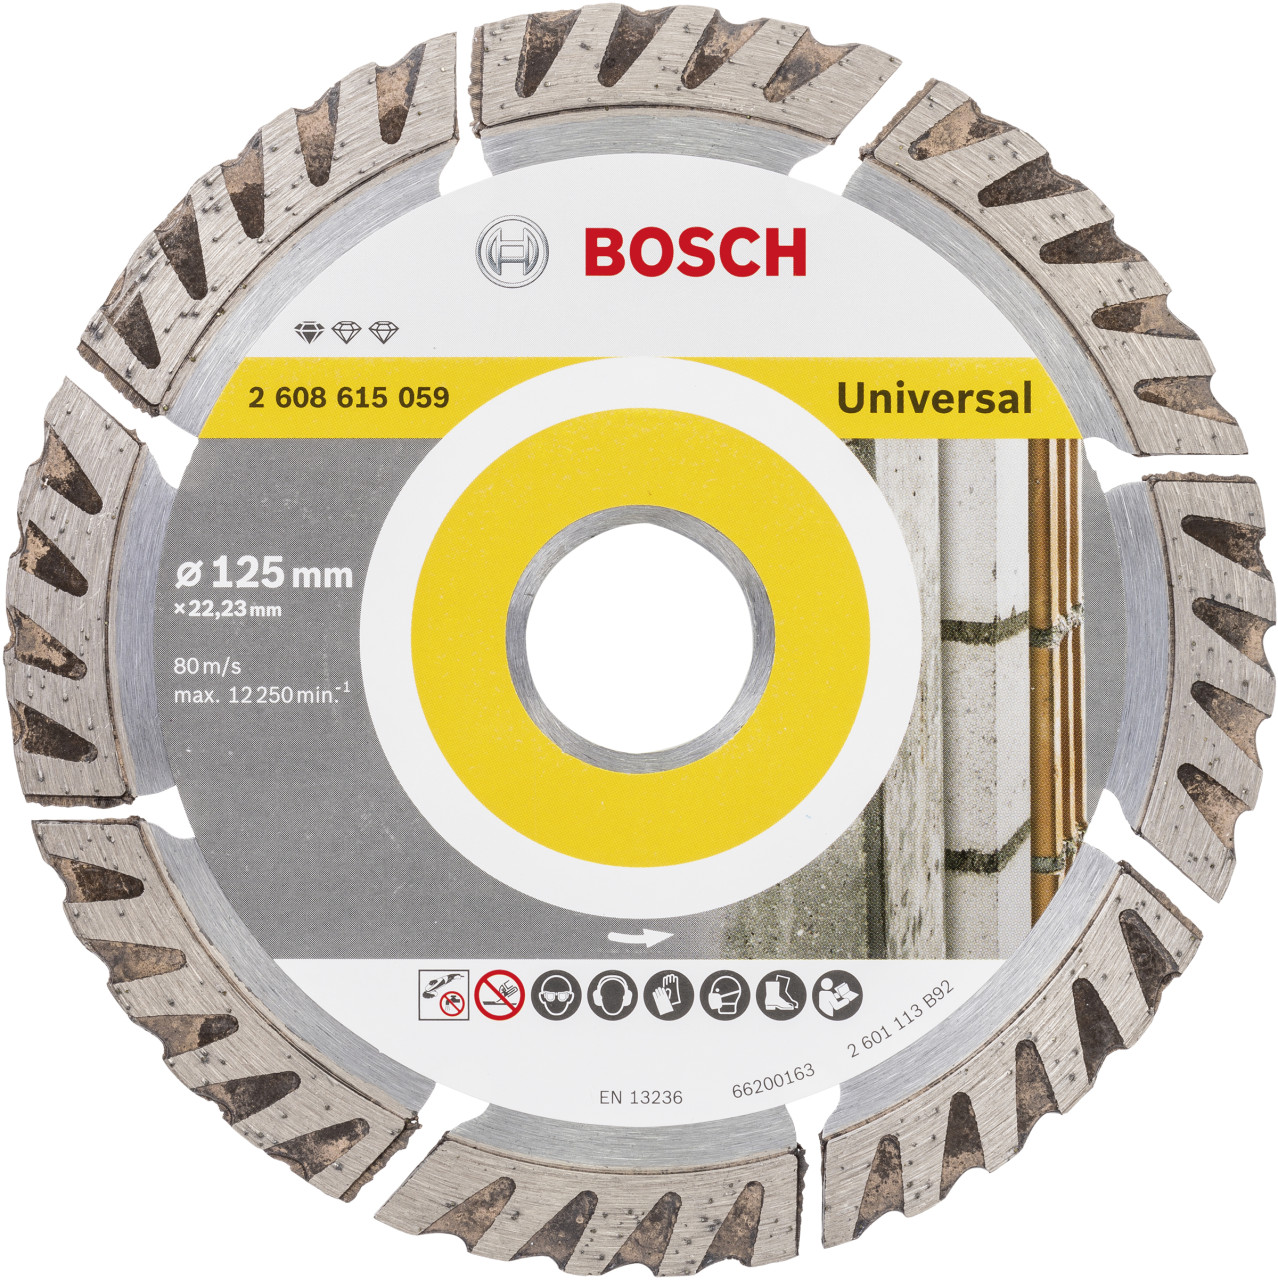 Bosch Trennscheibe Diamant Ø 125 mm 22, 23 mm GLO761122273